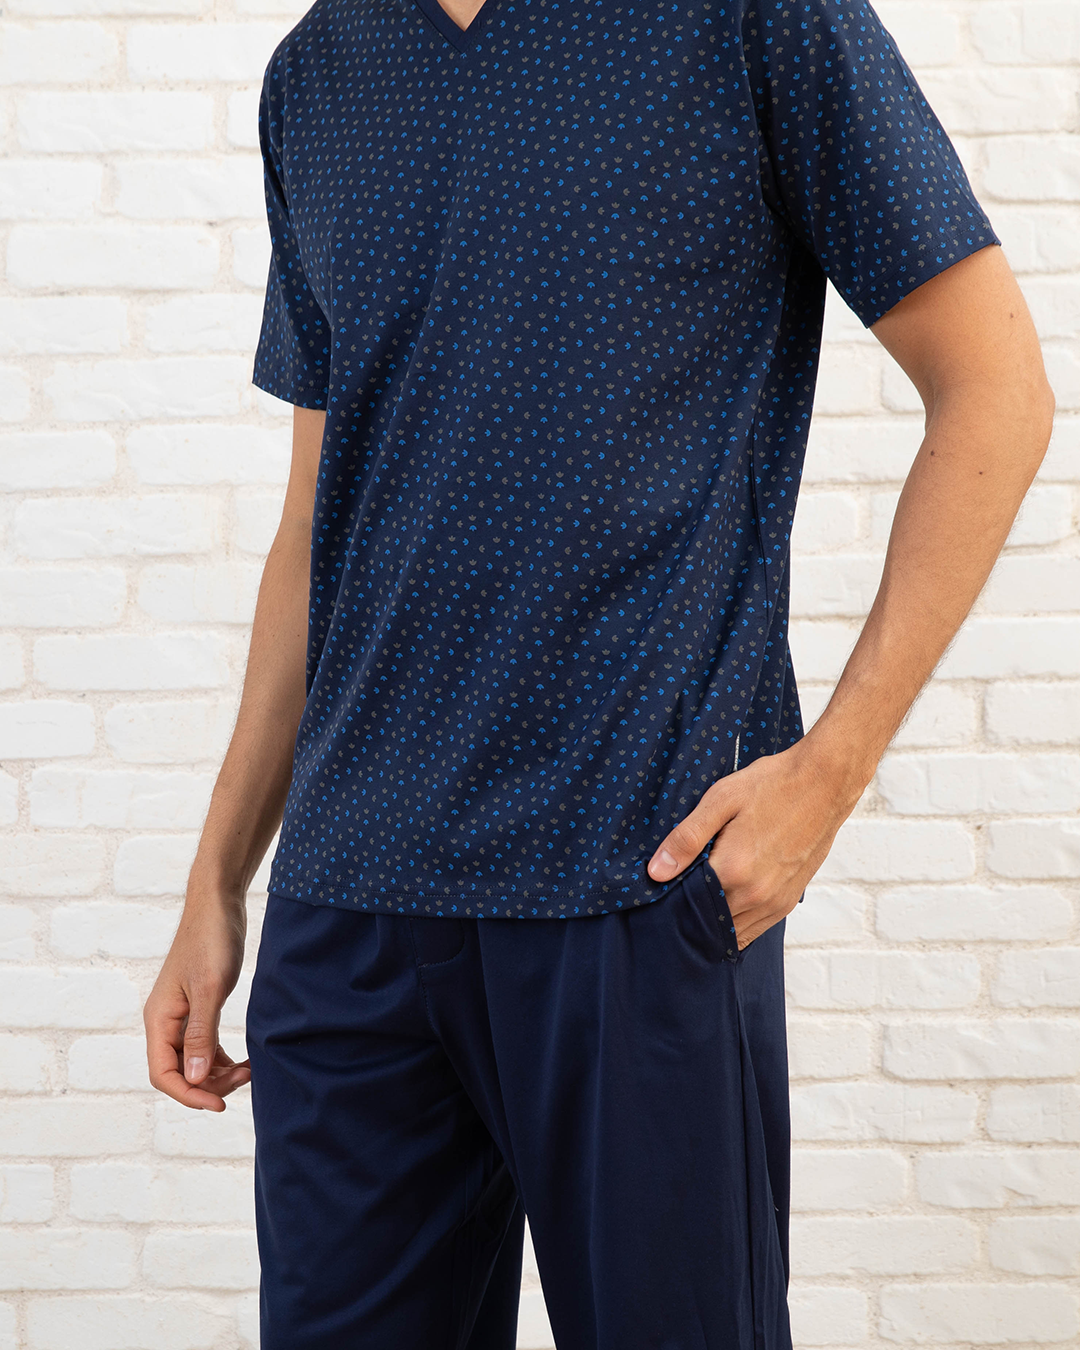 Men's navy blue printed pajamas